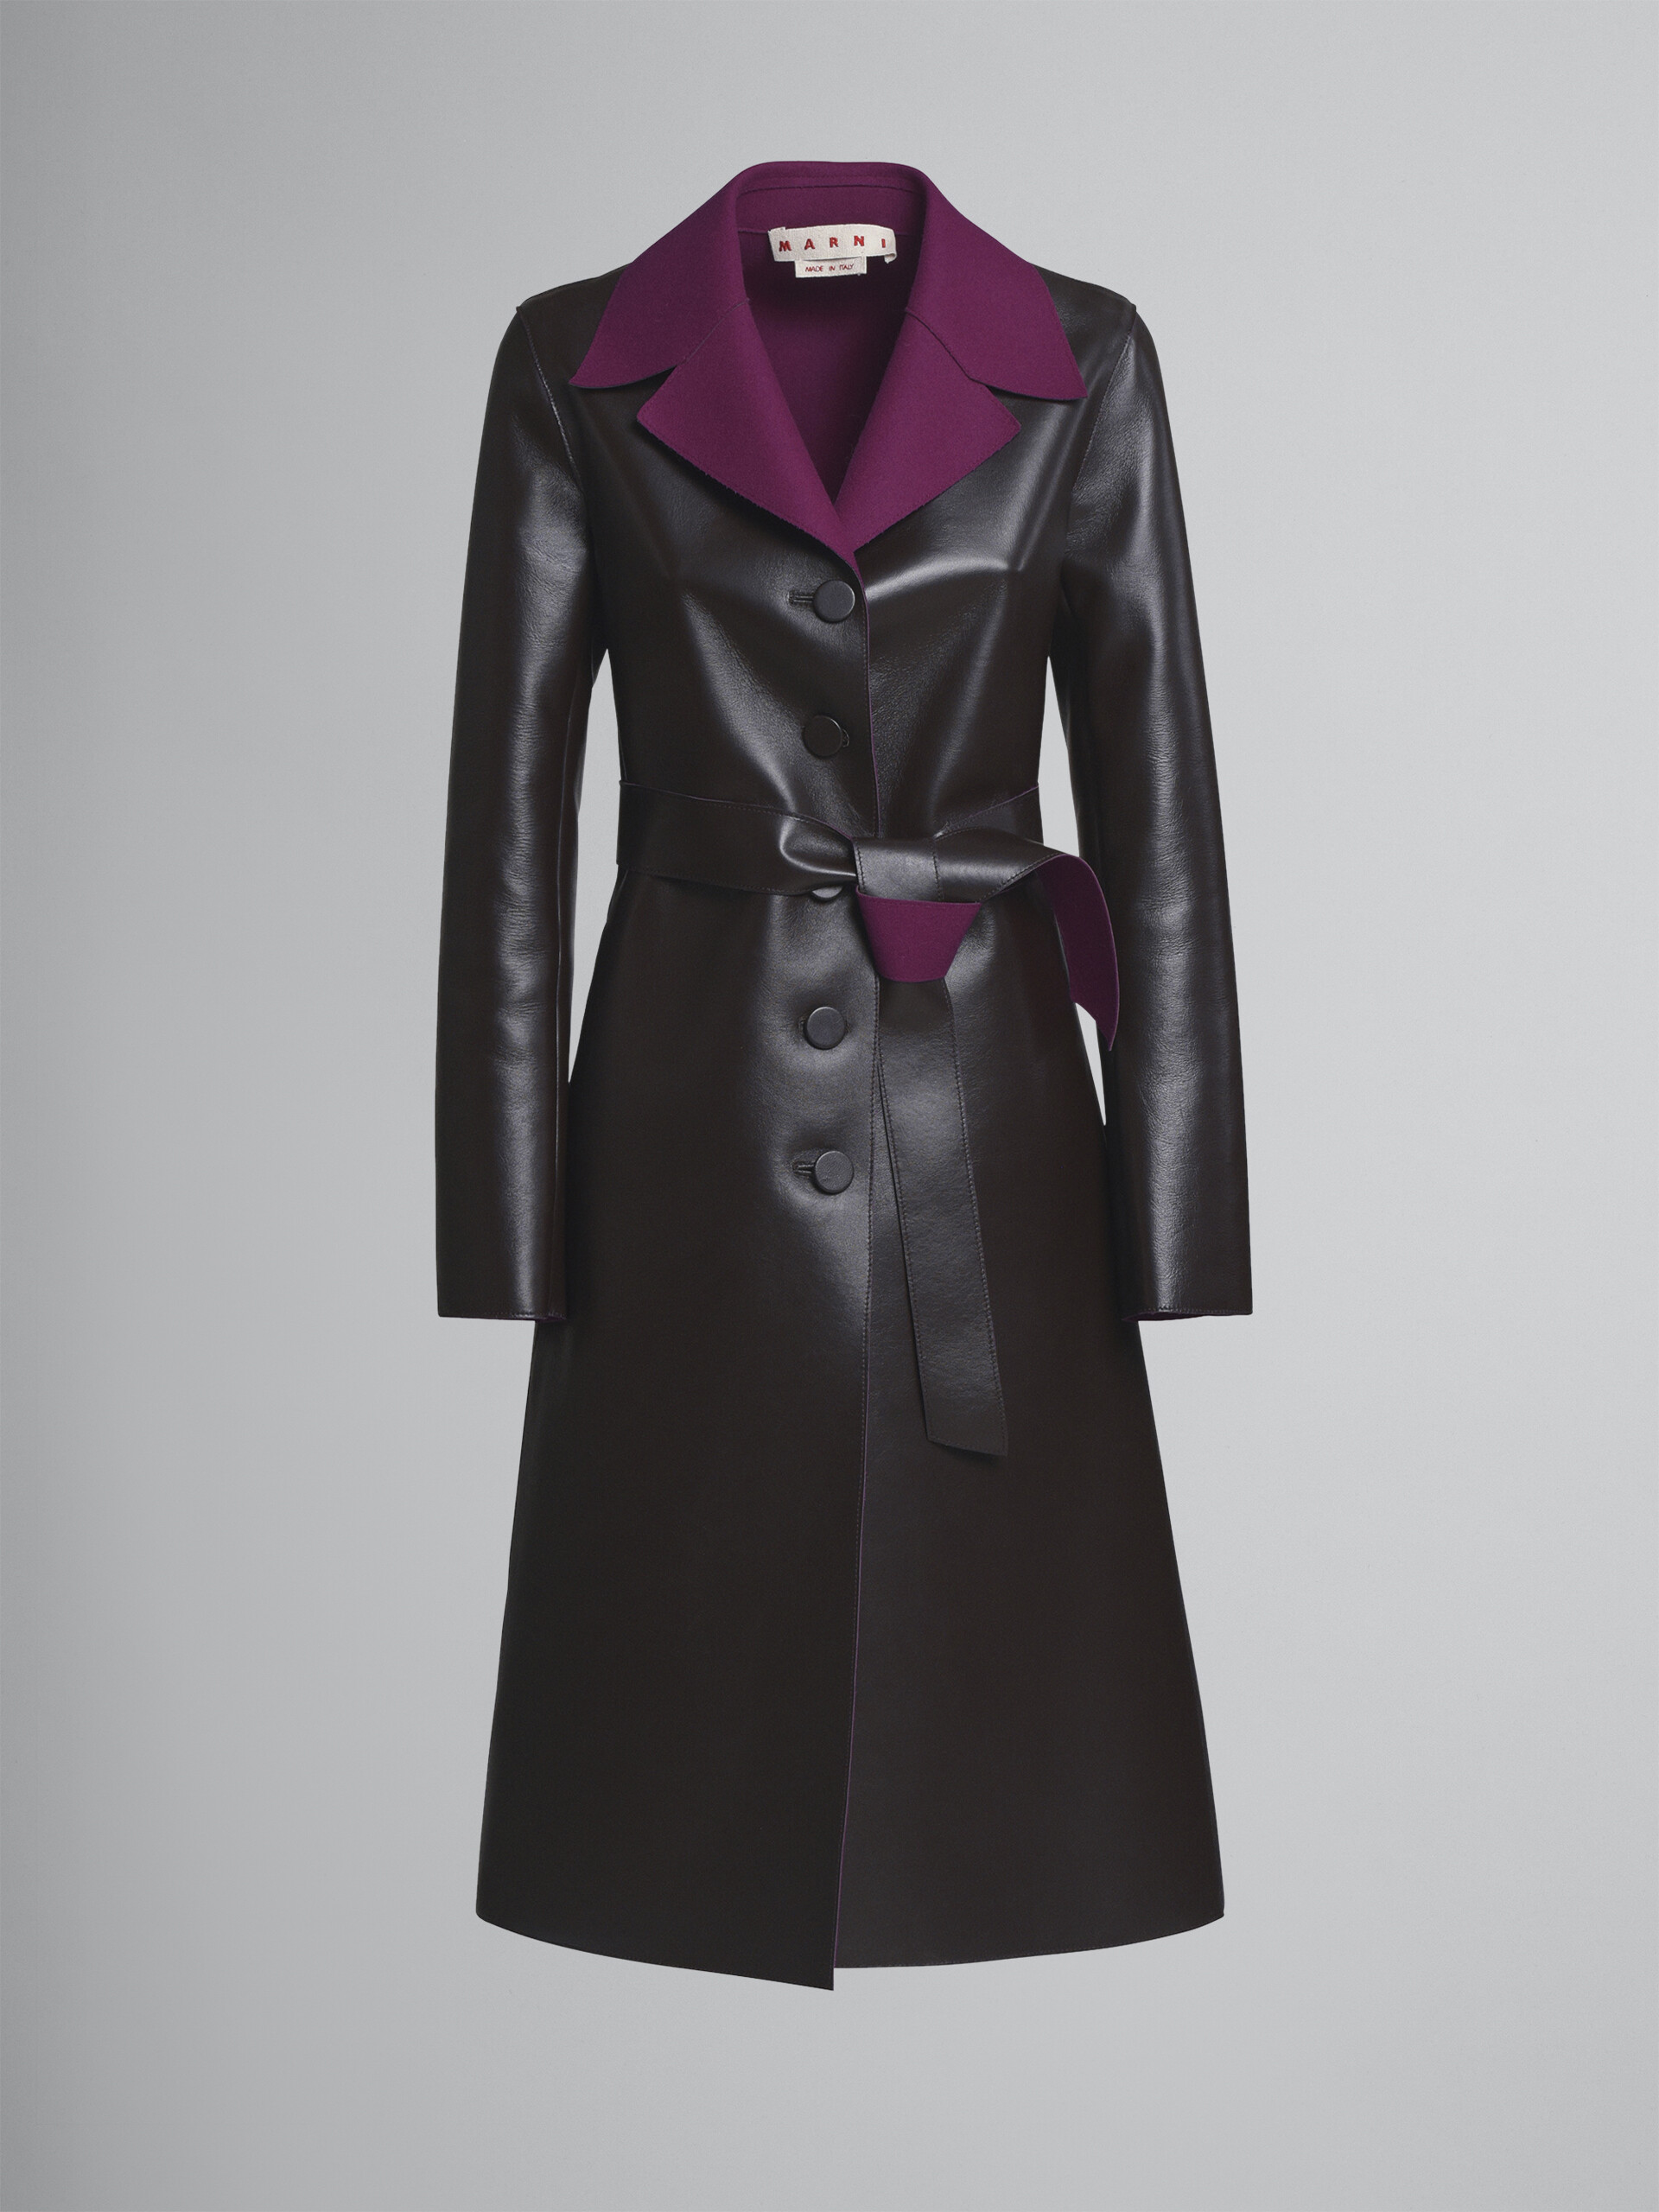 Leather coat - Coat - Image 1